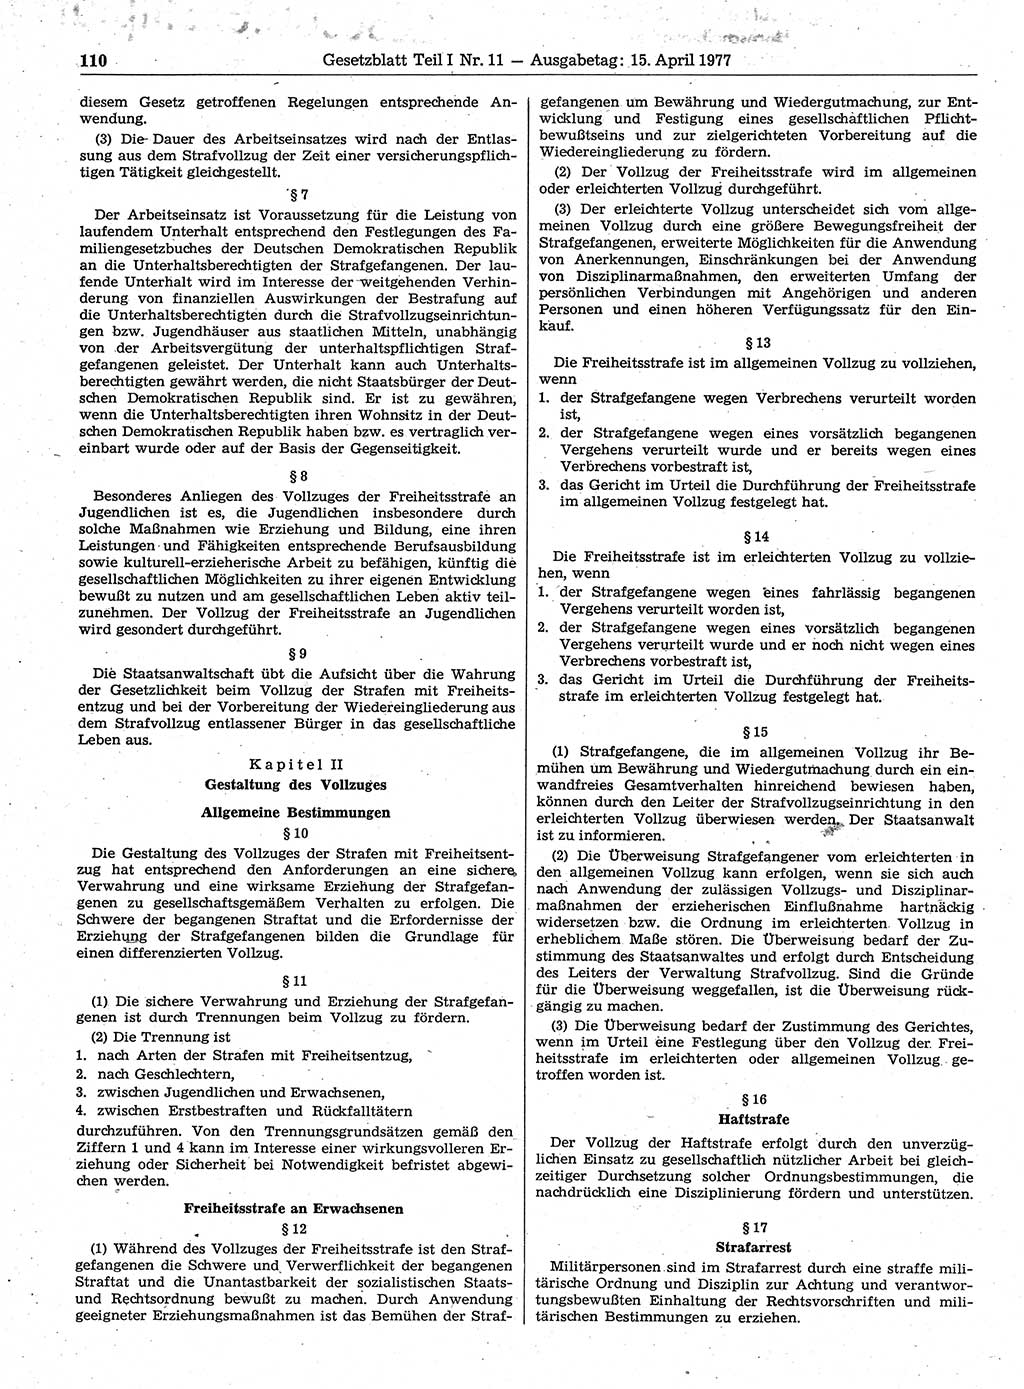 Gesetzblatt (GBl.) der Deutschen Demokratischen Republik (DDR) Teil Ⅰ 1977, Seite 110 (GBl. DDR Ⅰ 1977, S. 110)